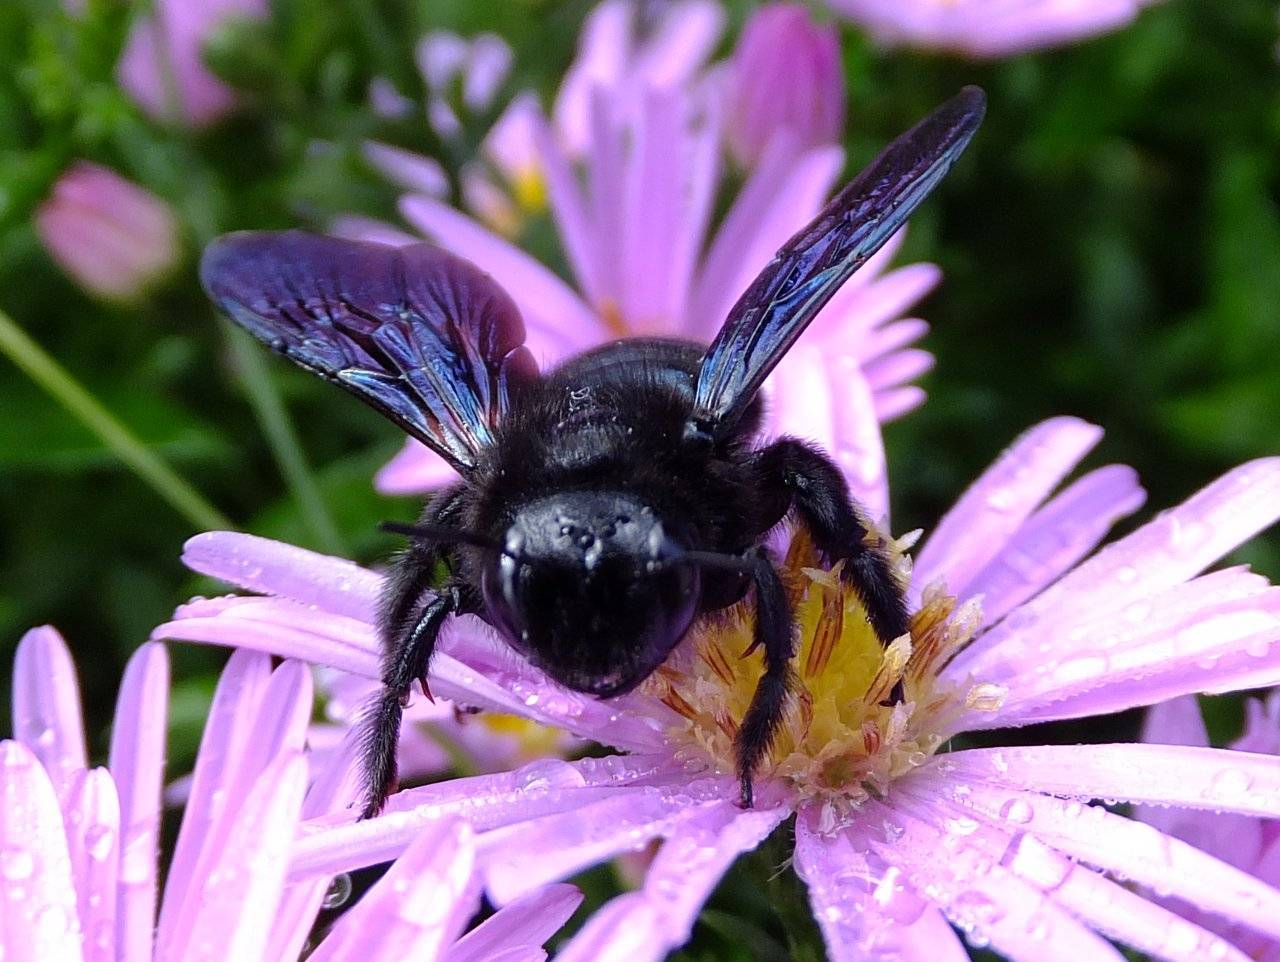 Пчела: описание, размножение, образ жизни, ареал, питание, враги, как делают мед, интересные факты  - «как и почему»